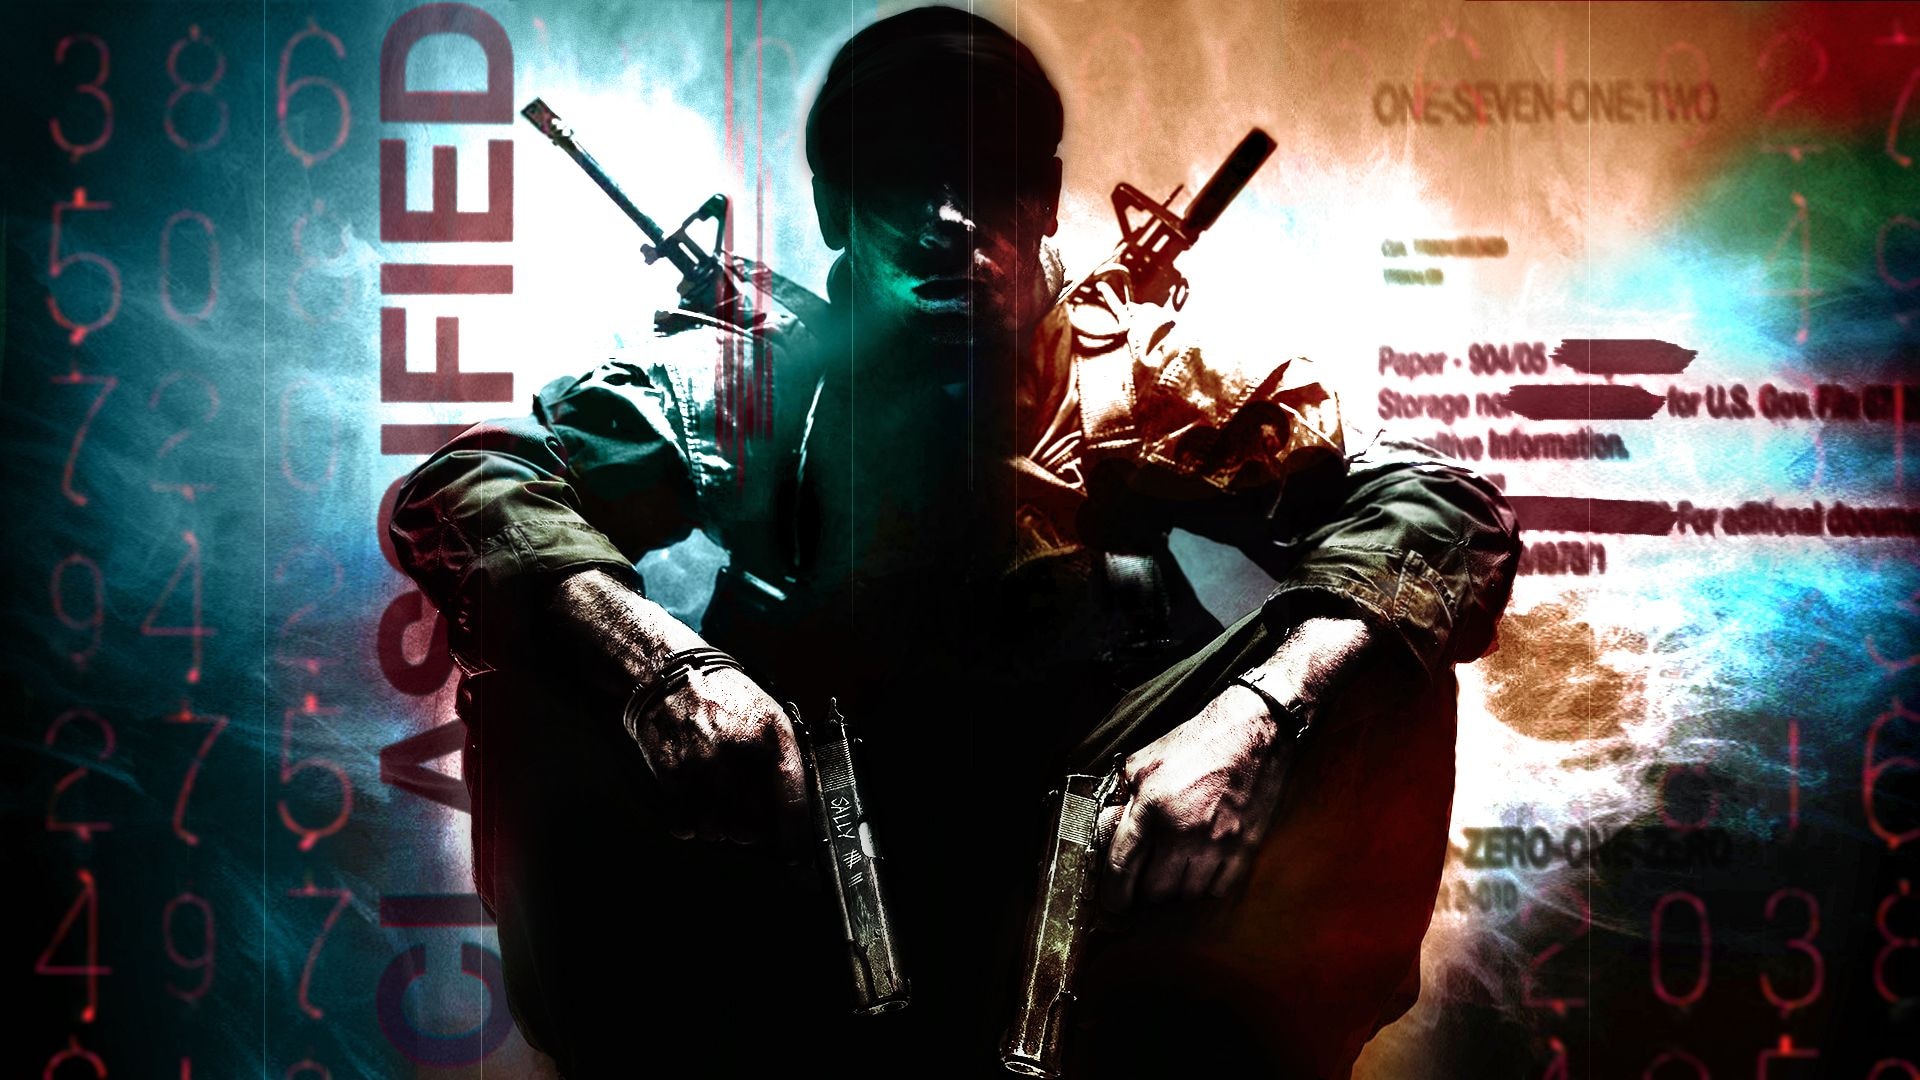 EKSKLUZYWNIE – Call of Duty obejmuje kampanie w otwartym świecie w Black Ops podczas wojny w Zatoce Perskiej i poza nią